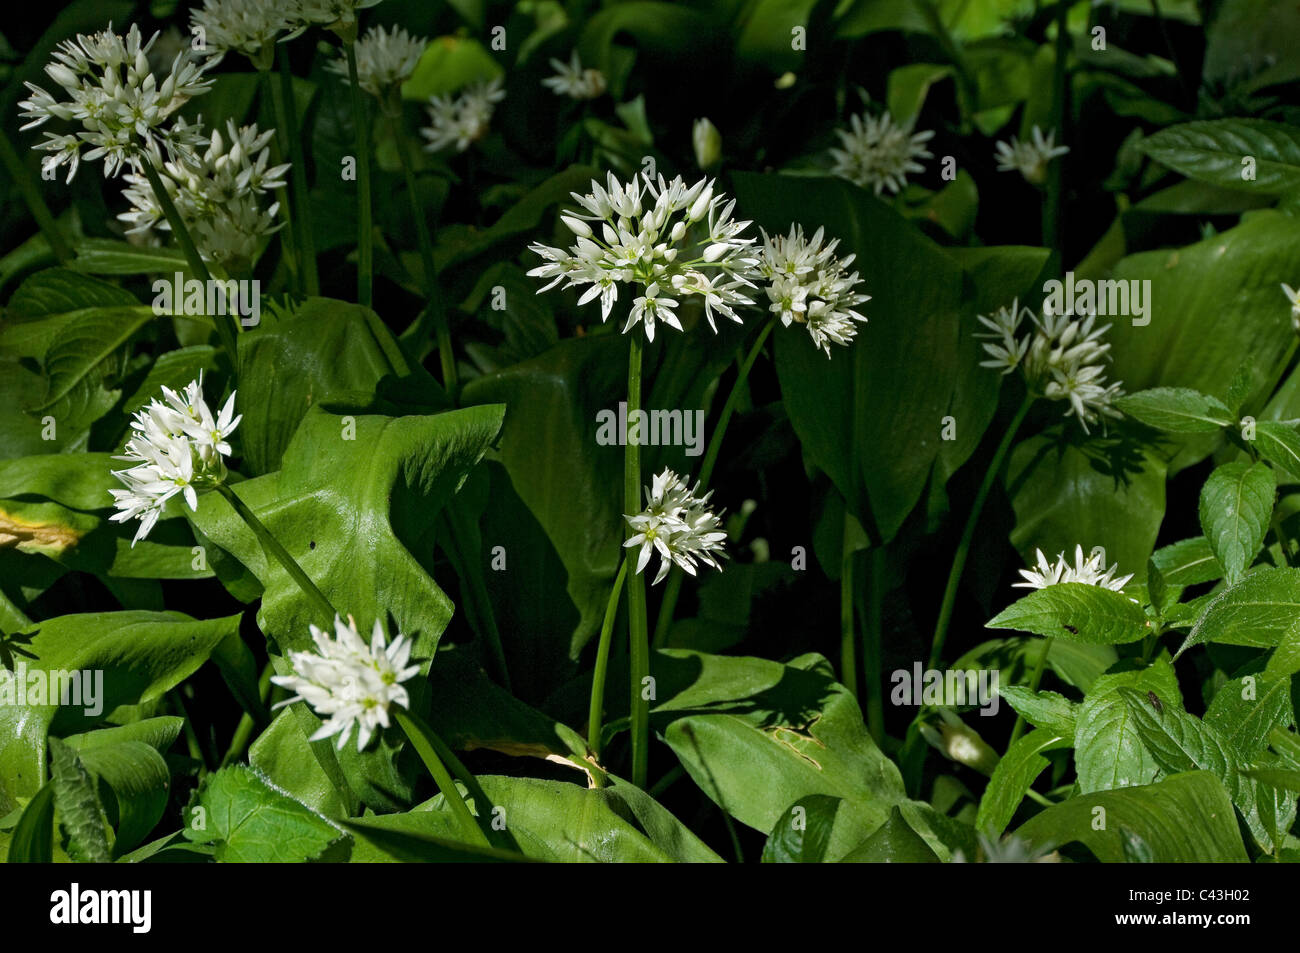 Gros plan de ramsons ou d'ail sauvage fleurs fleurs fleurs allium ursinum blanc fleurs sauvages au printemps Angleterre Royaume-Uni Grande-Bretagne Banque D'Images